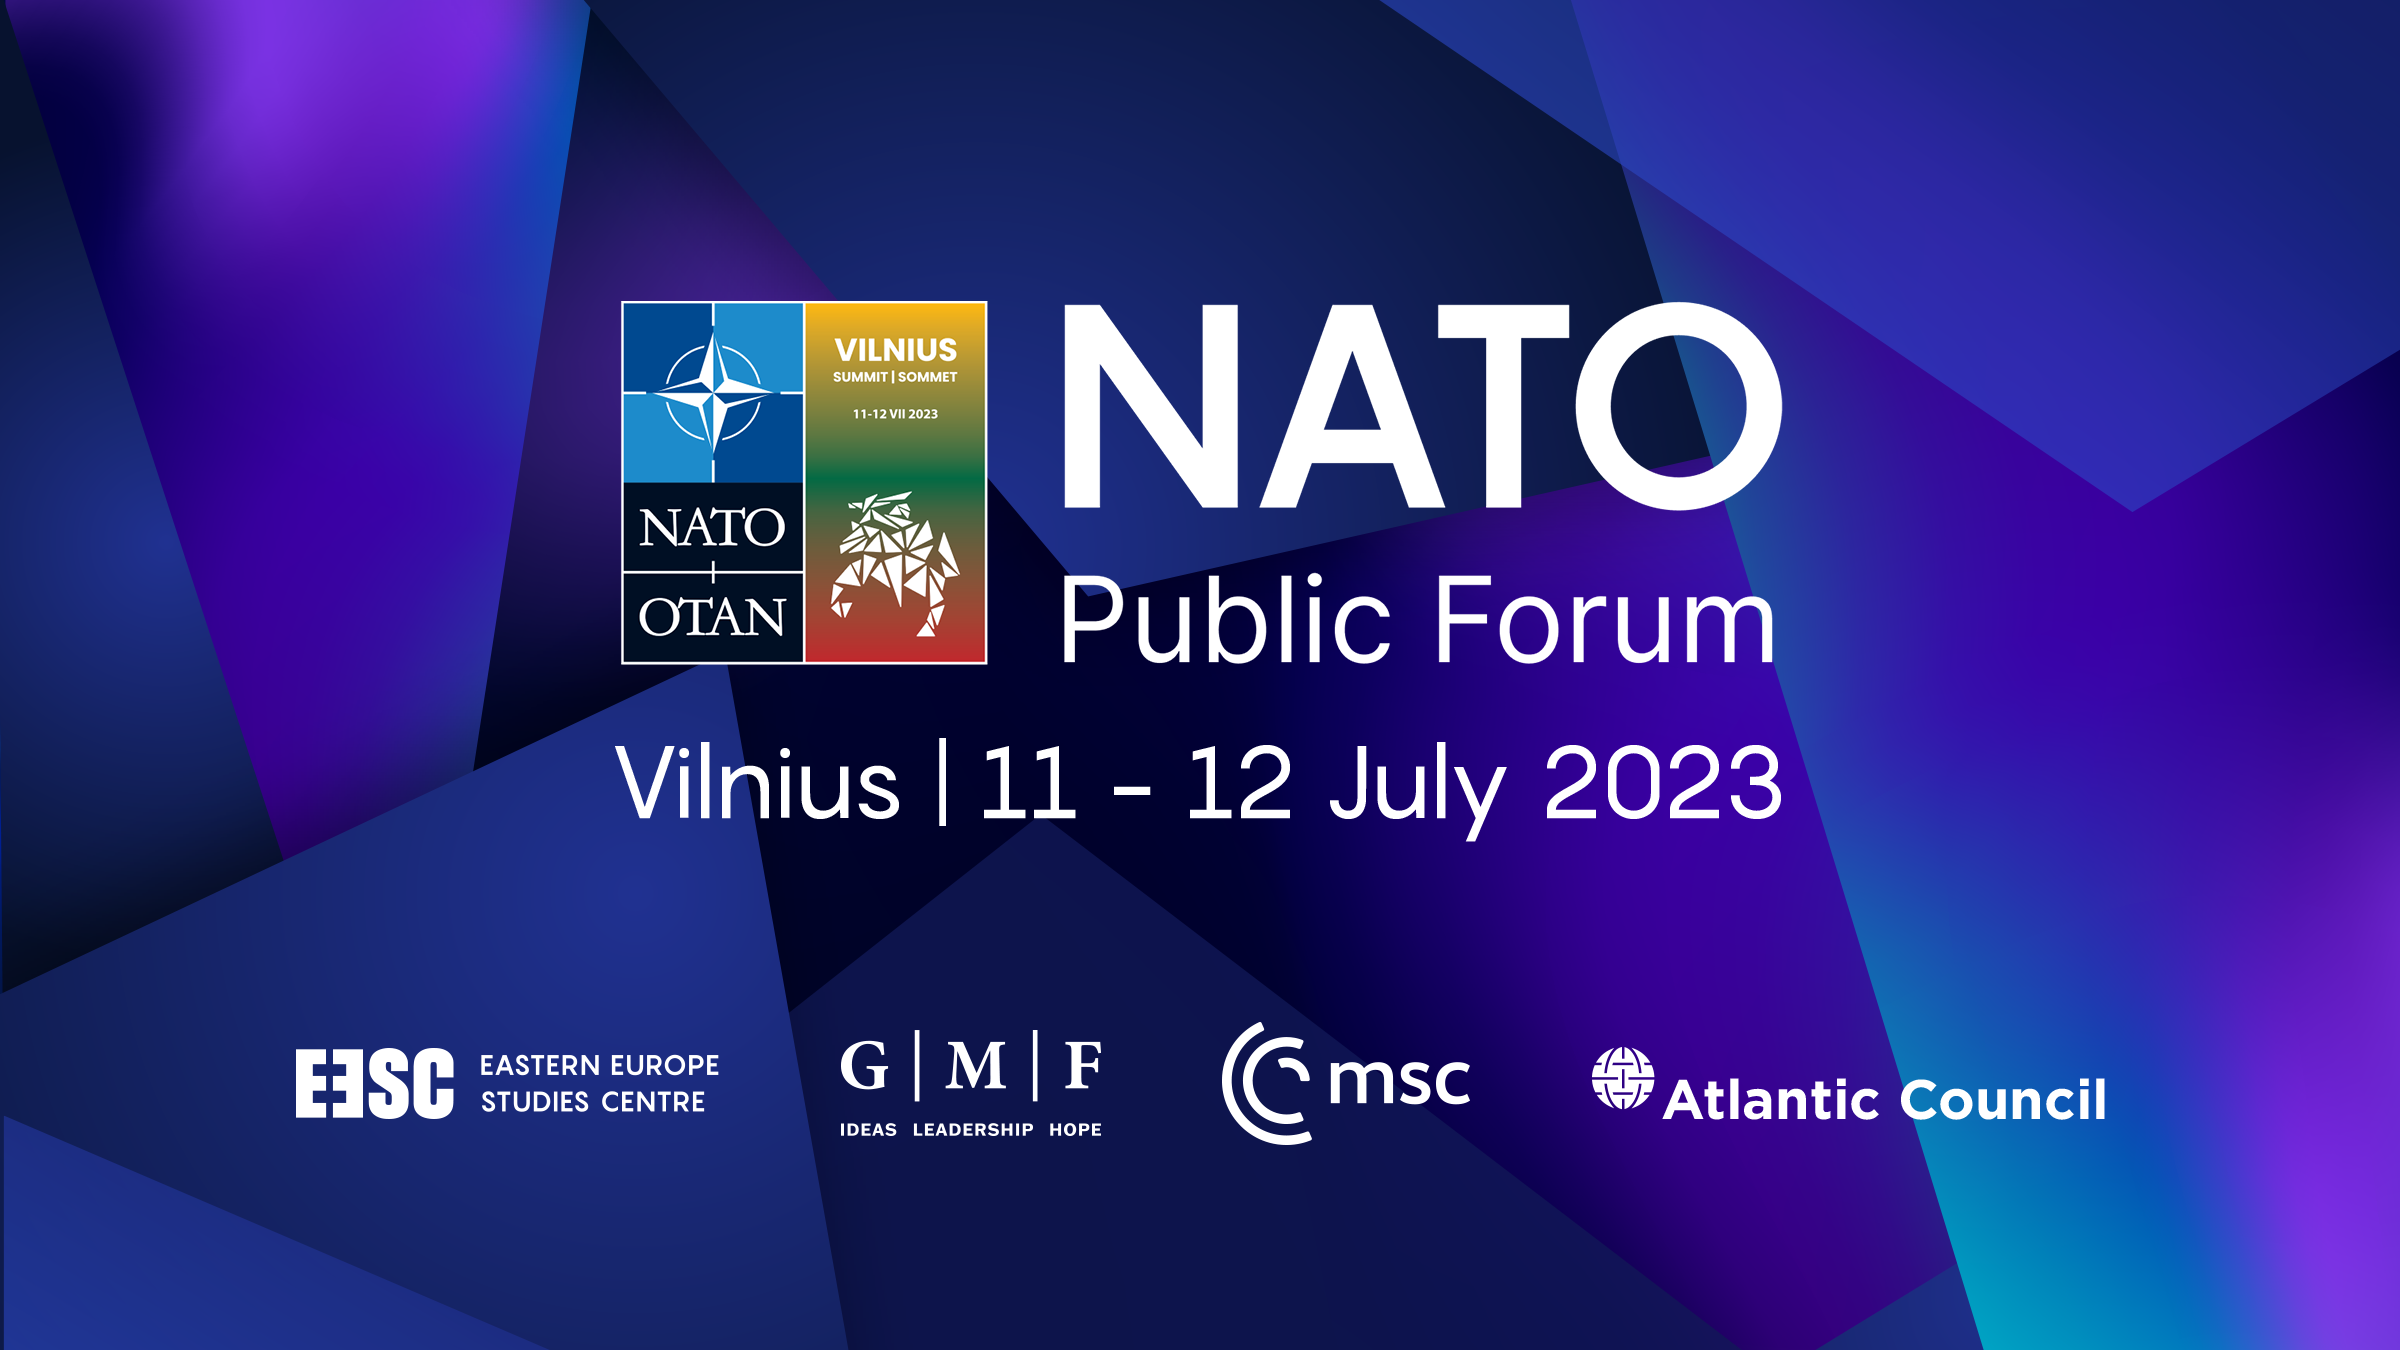 Il Nato Public Forum al Summit di Vilnius. I video dell'evento